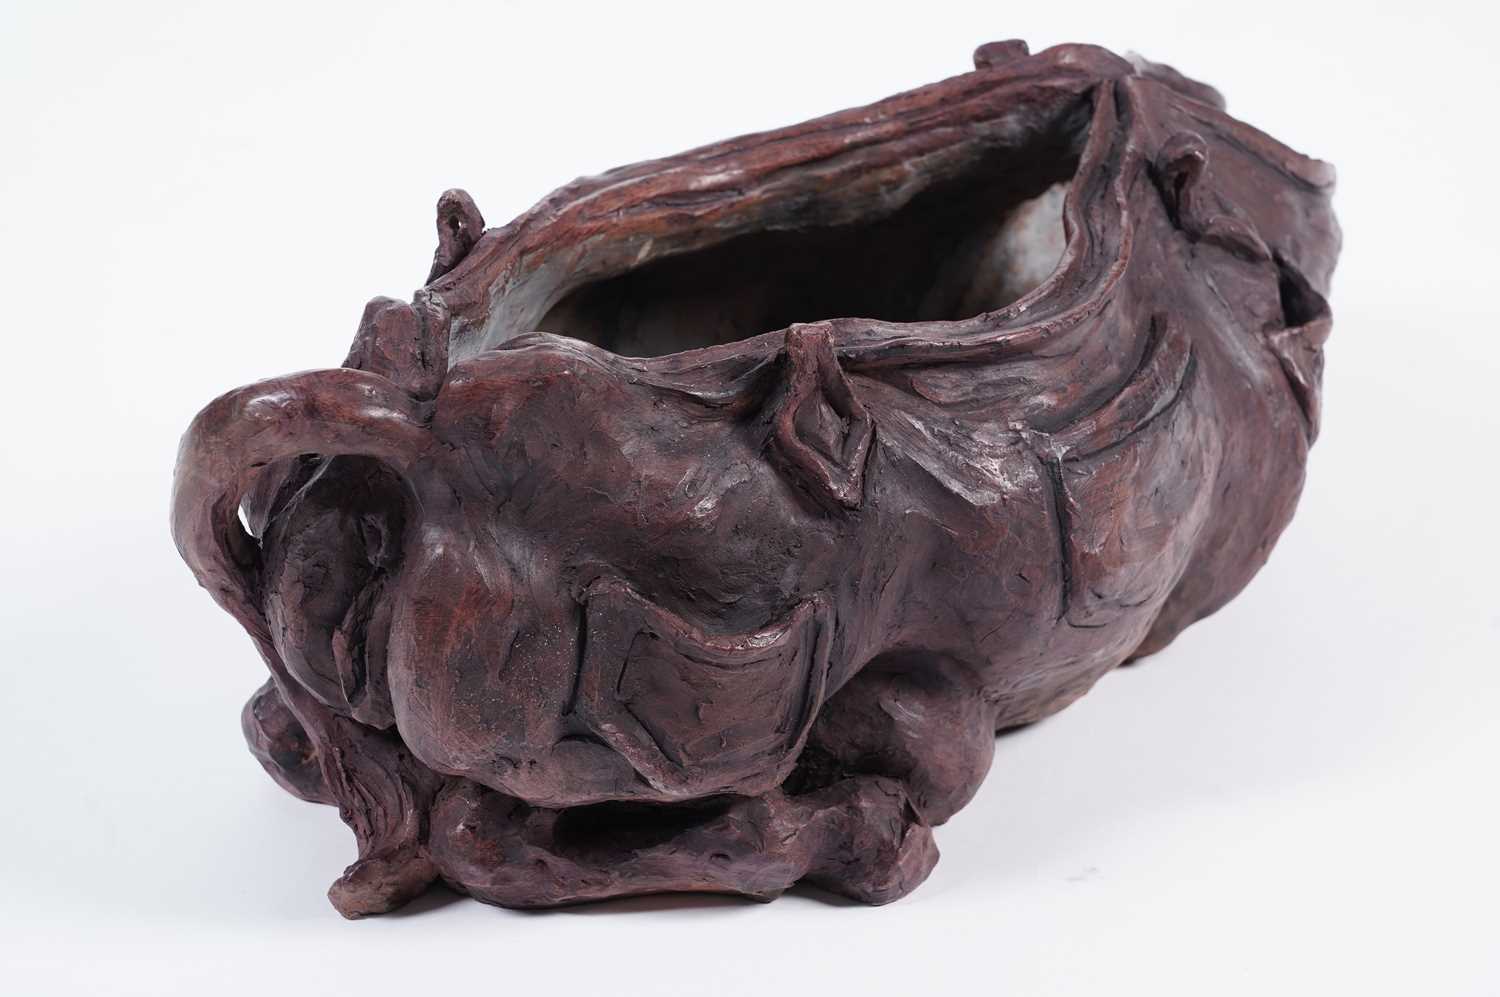 Lisa Delarny - Cowskin Handbag | clay sculpture - Image 4 of 8